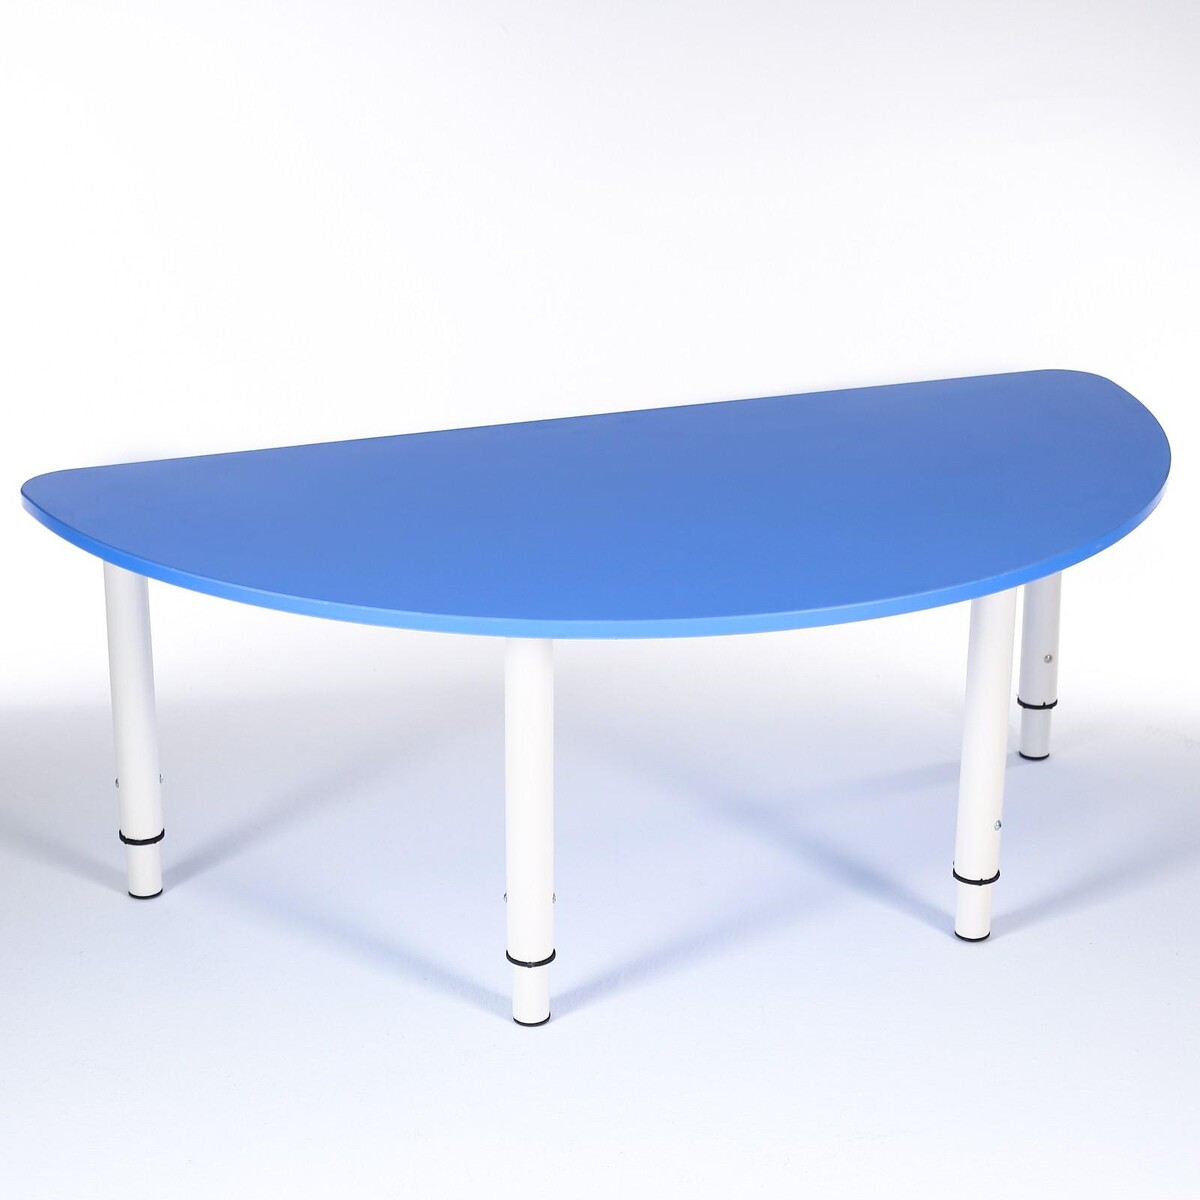 Стол полукруг растущий гр.0-3 на металлокаркасе, синий стол полукруг растущий гр 0 3 на металлокаркасе синий